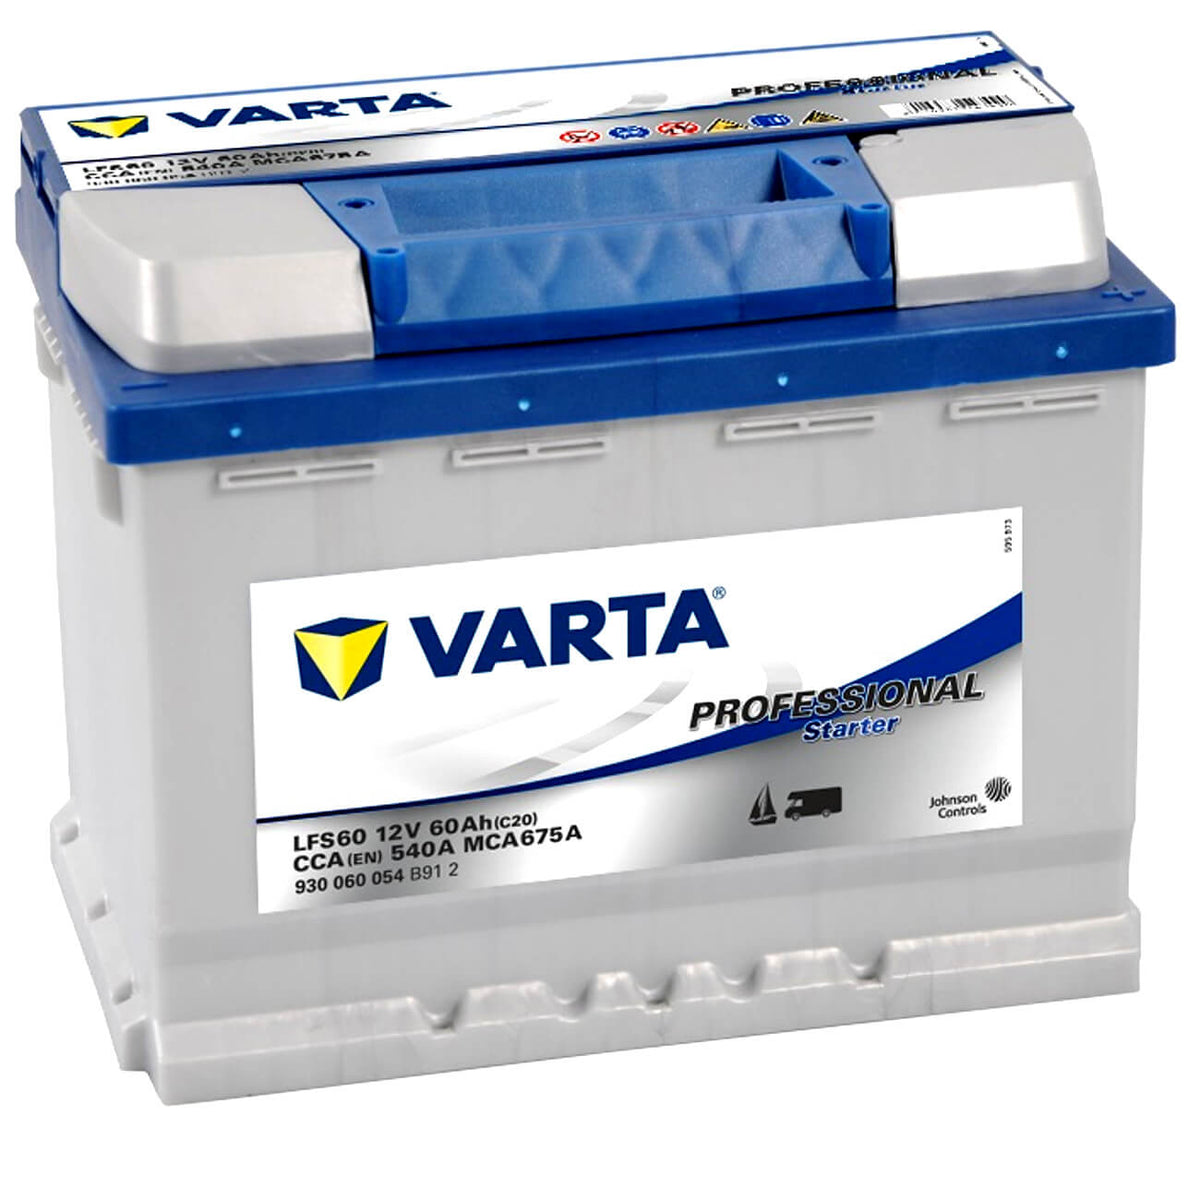 Varta Professional Starter LFS60 12V 60Ah 540A